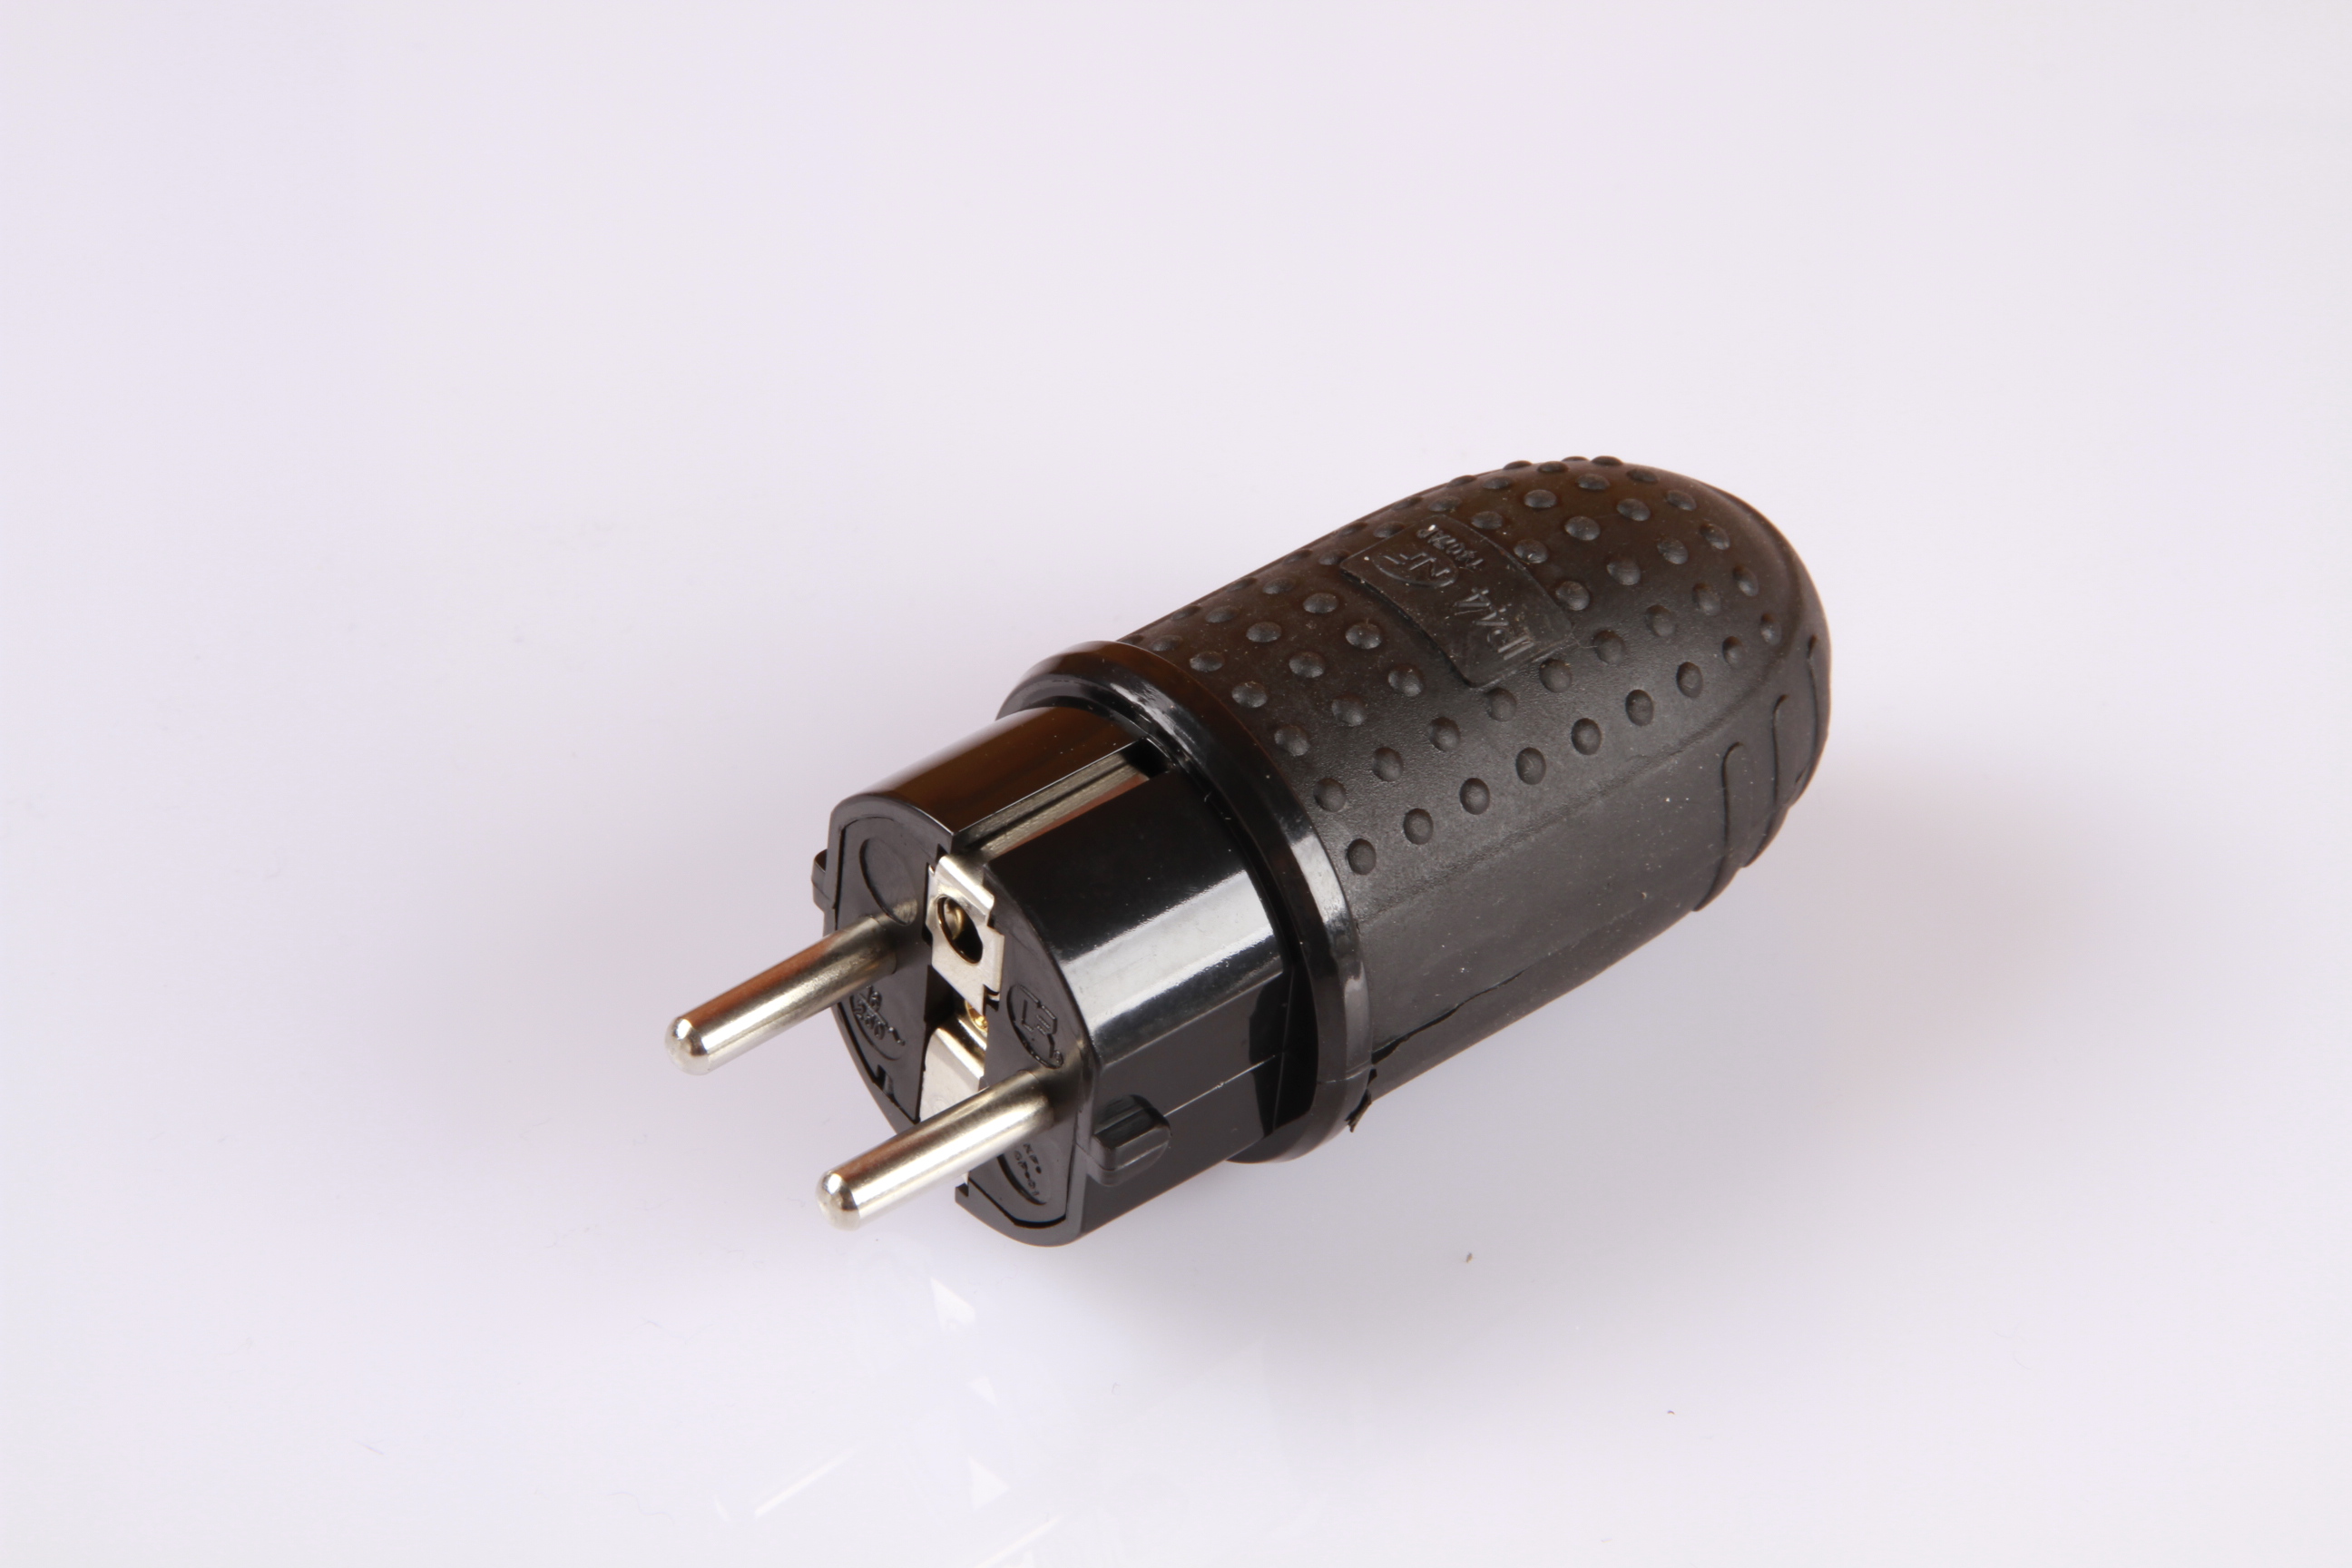 rewirable male and female plug